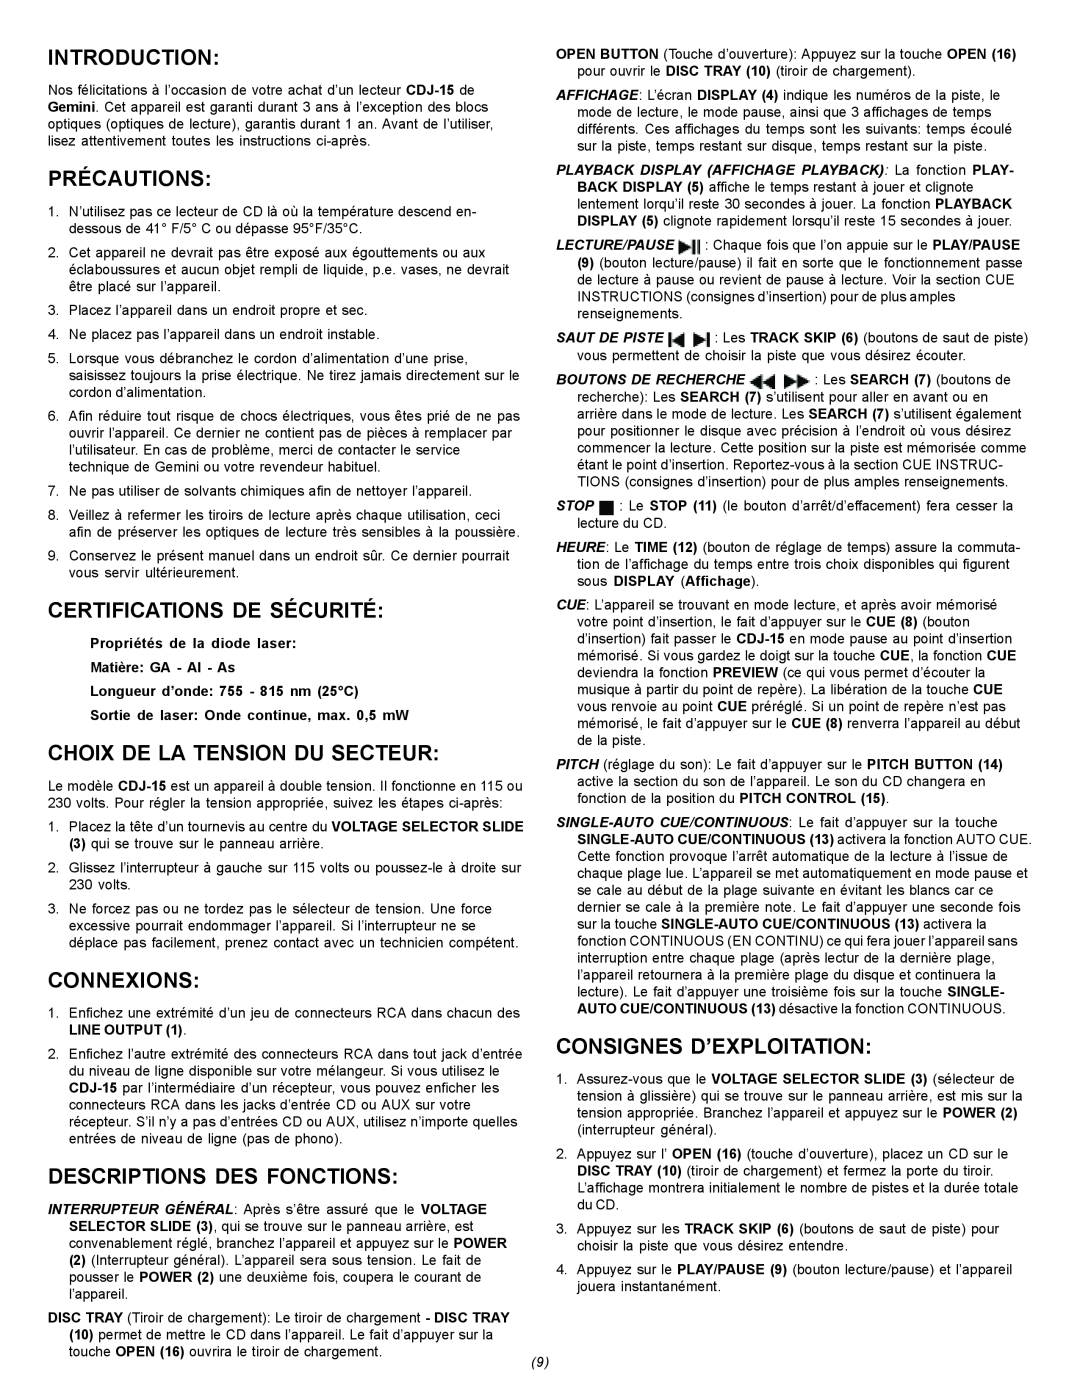 Gemini CDJ-15 manual Précautions, Certifications De Sécurité, Choix De La Tension Du Secteur, Connexions, Introduction 